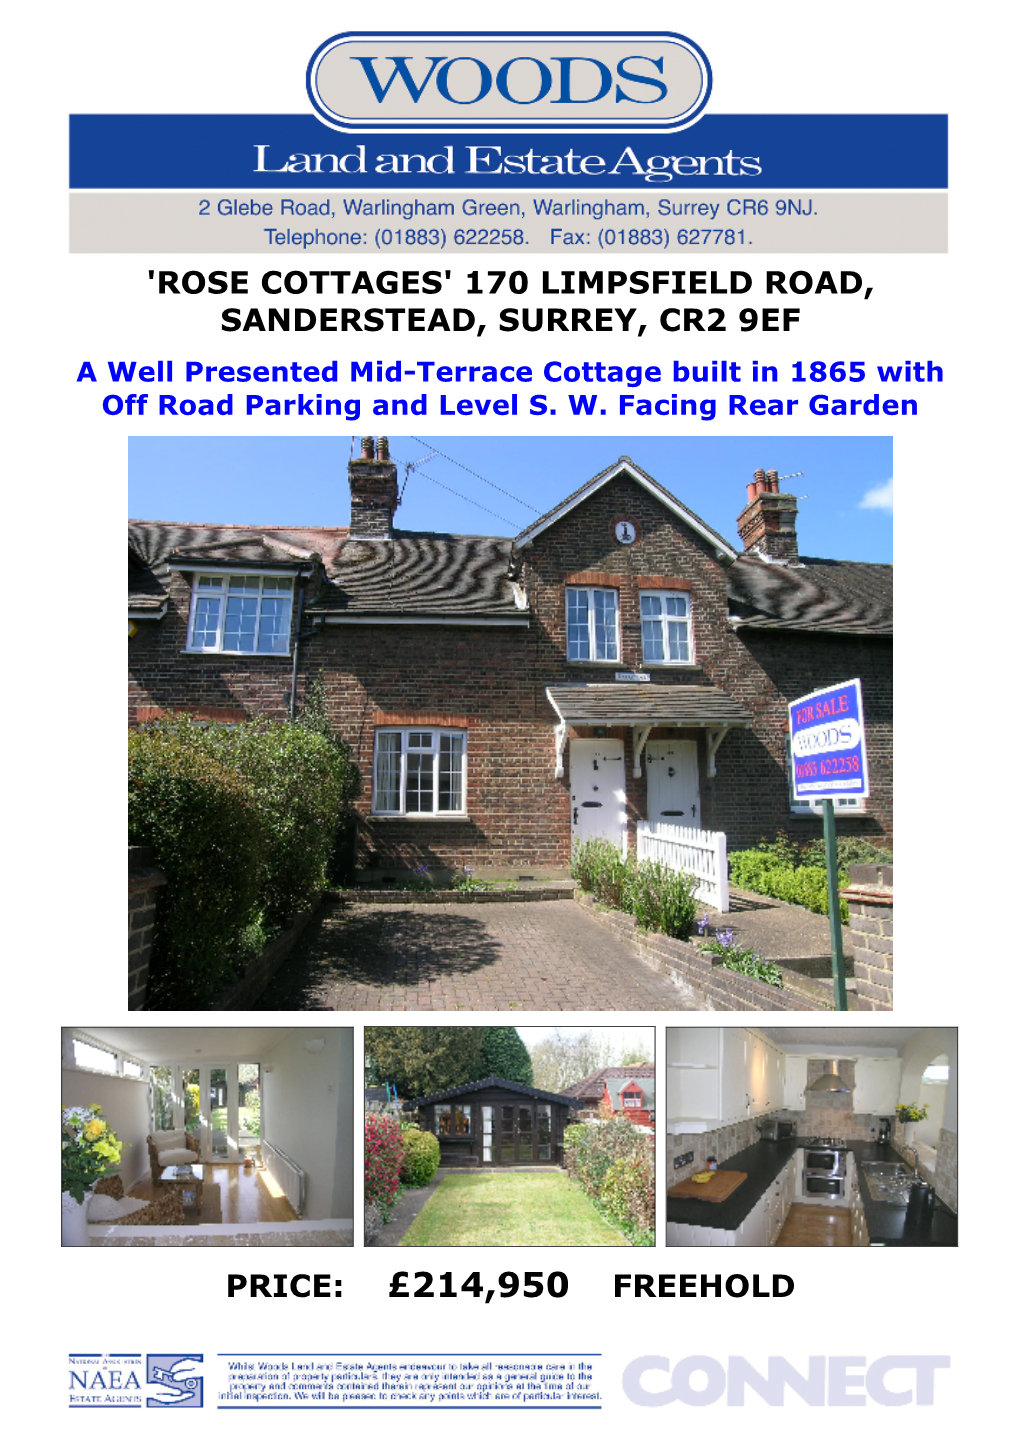 'Rose Cottages' 170 Limpsfield Road, Sanderstead, Surrey, Cr2 9Ef